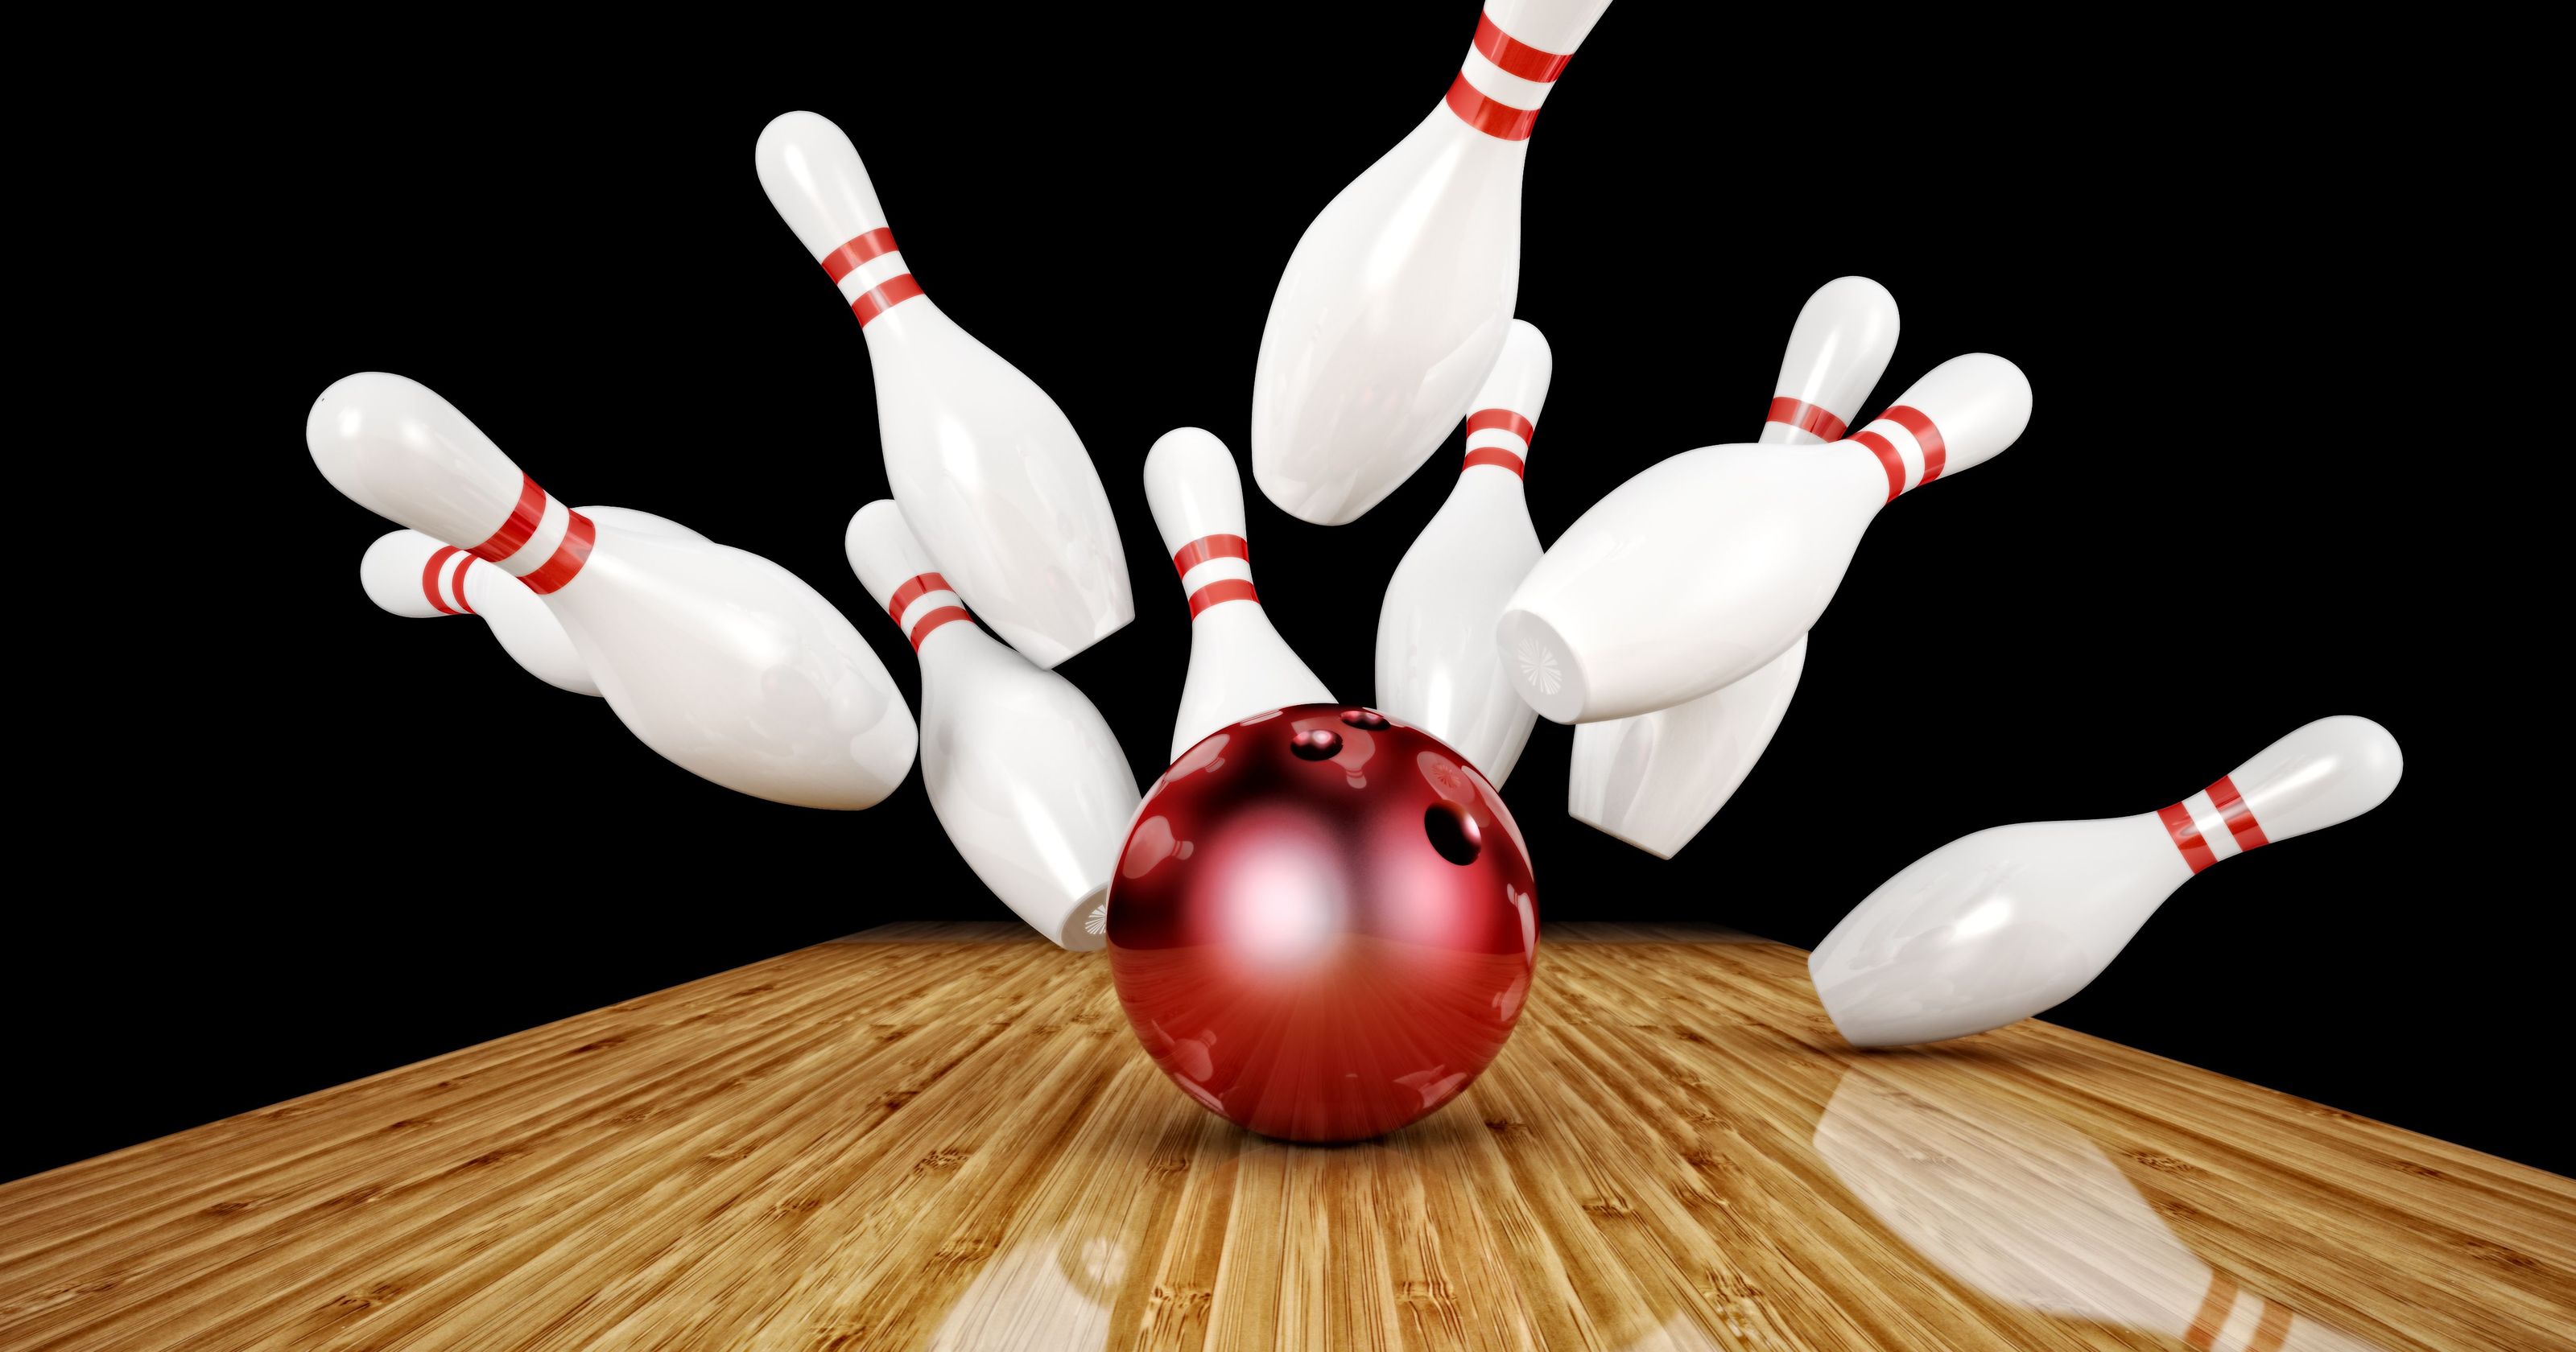 3. rahvusvahelise kurtide bowlinguvõistlus toimub 8. - 9. juunil 2019. a Tartus